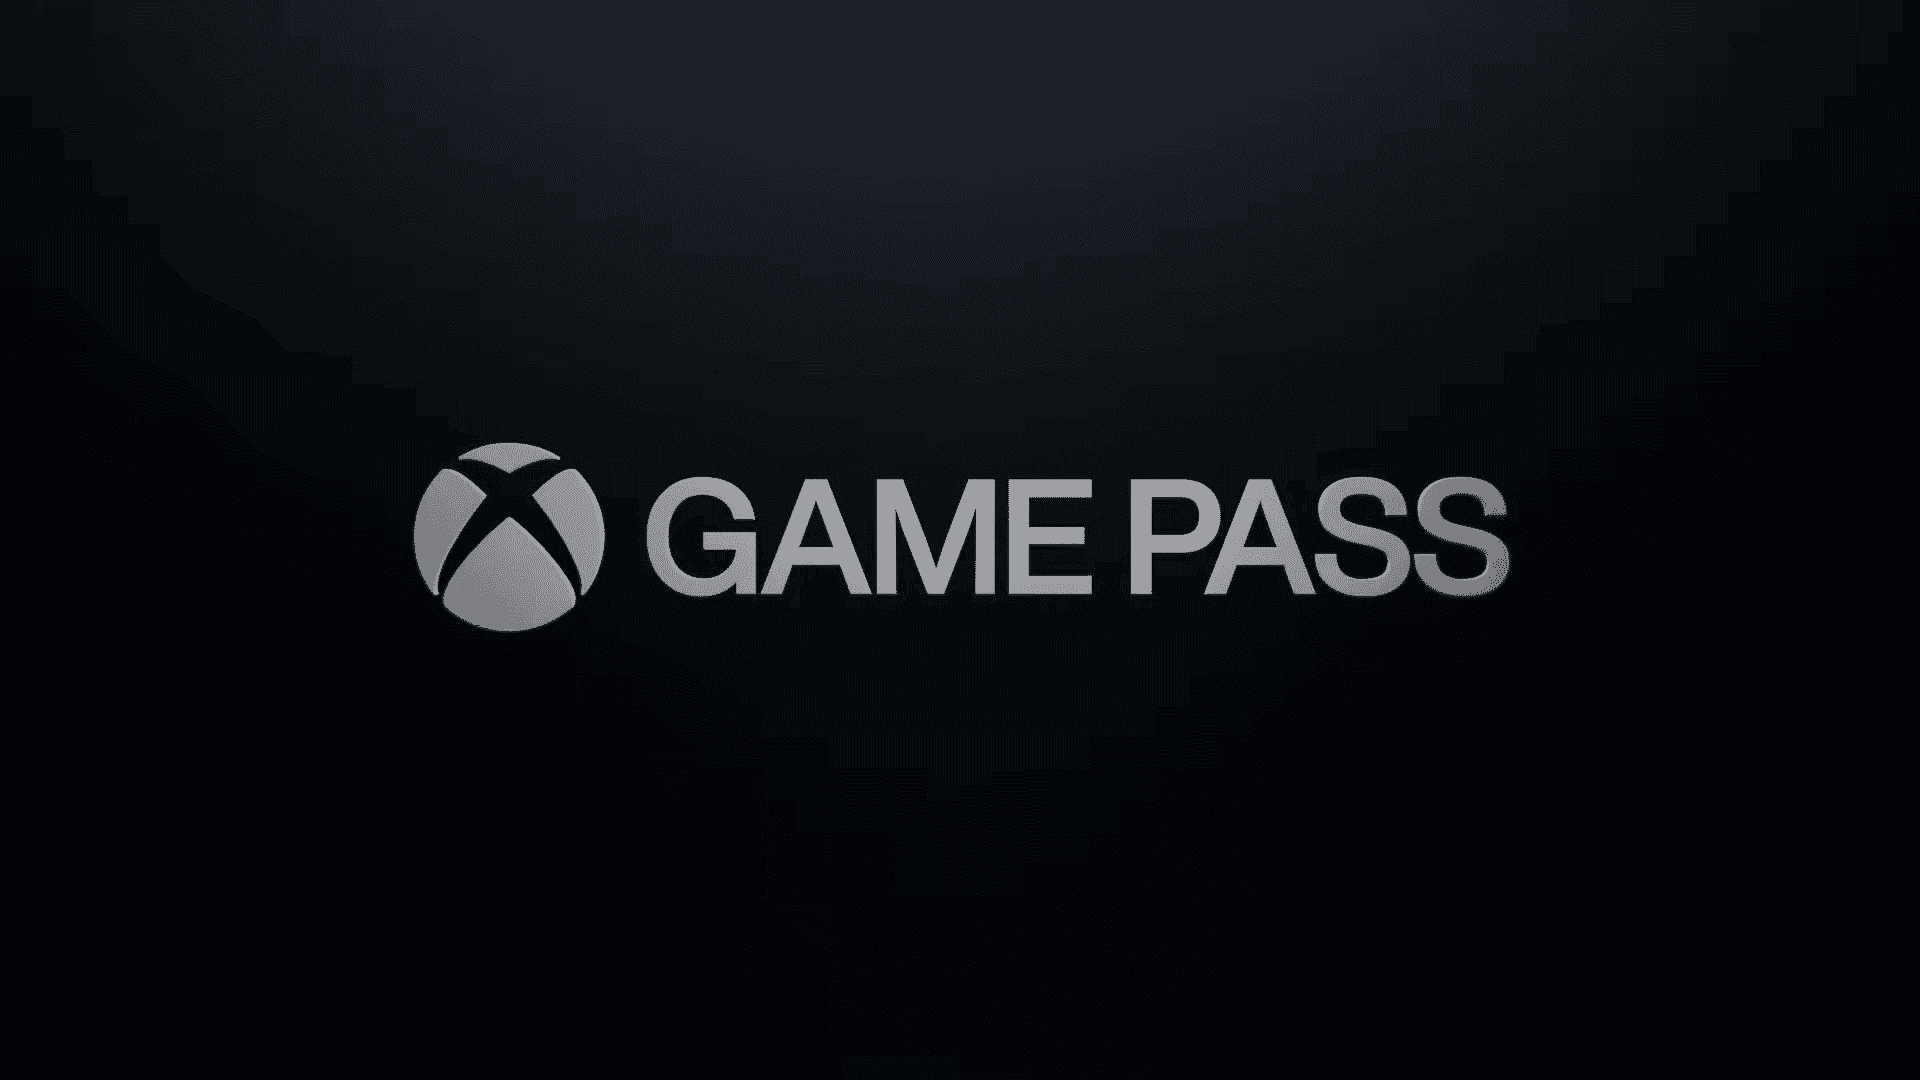 Xbox Game Pass anuncia seis juegos nuevos